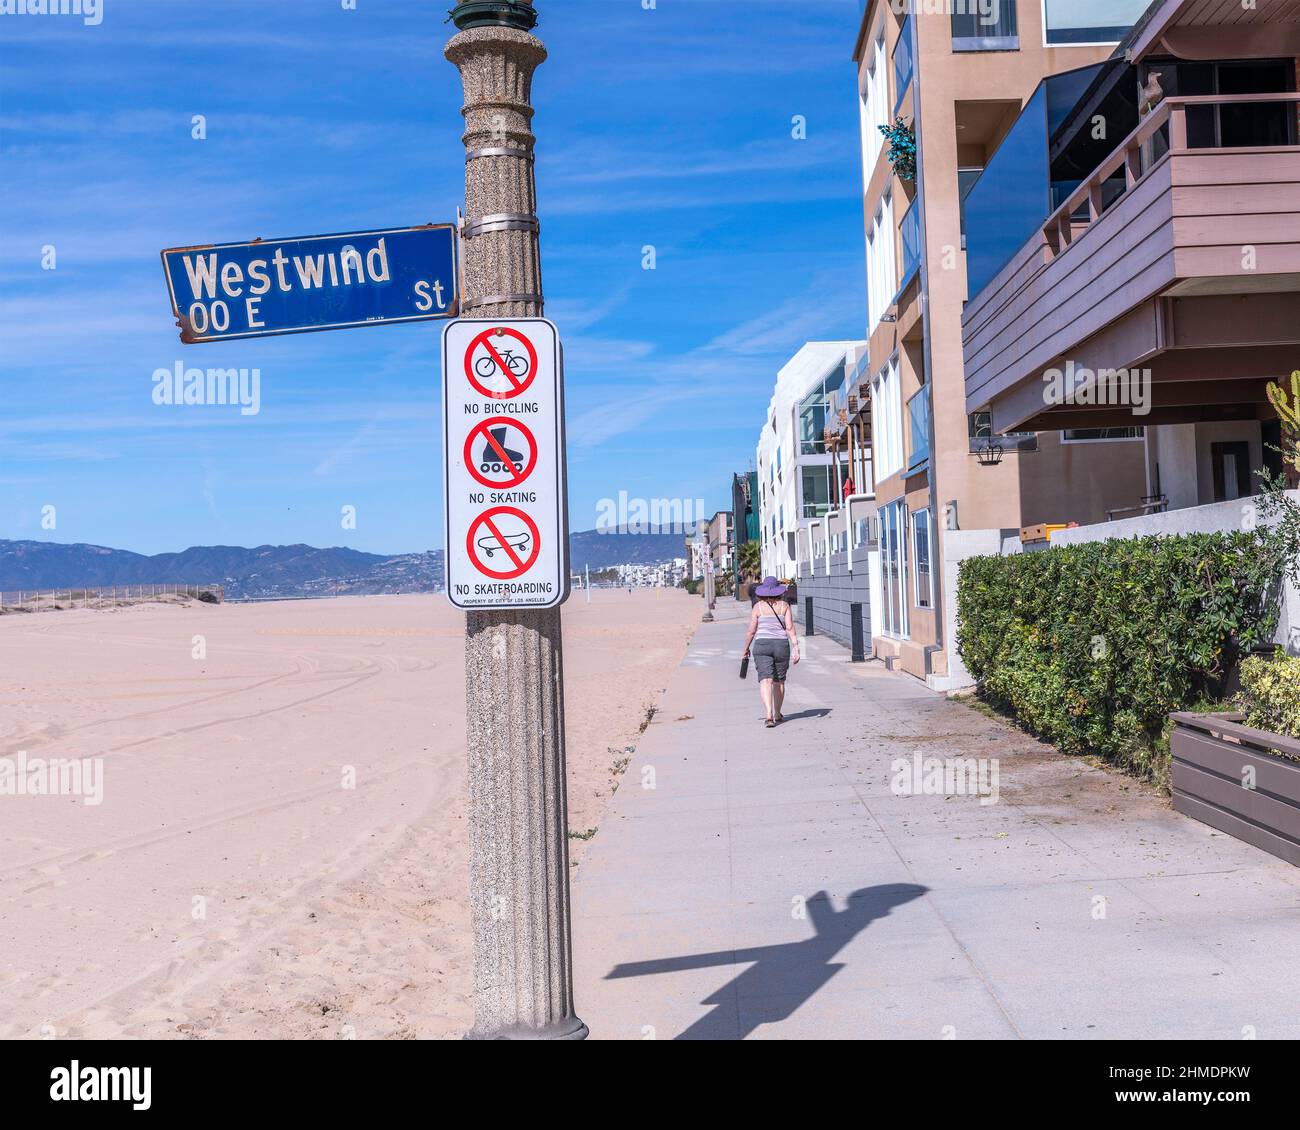 Marina Del Rey, CA - 8. Februar 2022: Kein Radfahren, kein Skaten und keine Skateboarding-Schilder sind auf einem Lampenposten in Marina Del Rey, CA, angebracht. Stockfoto